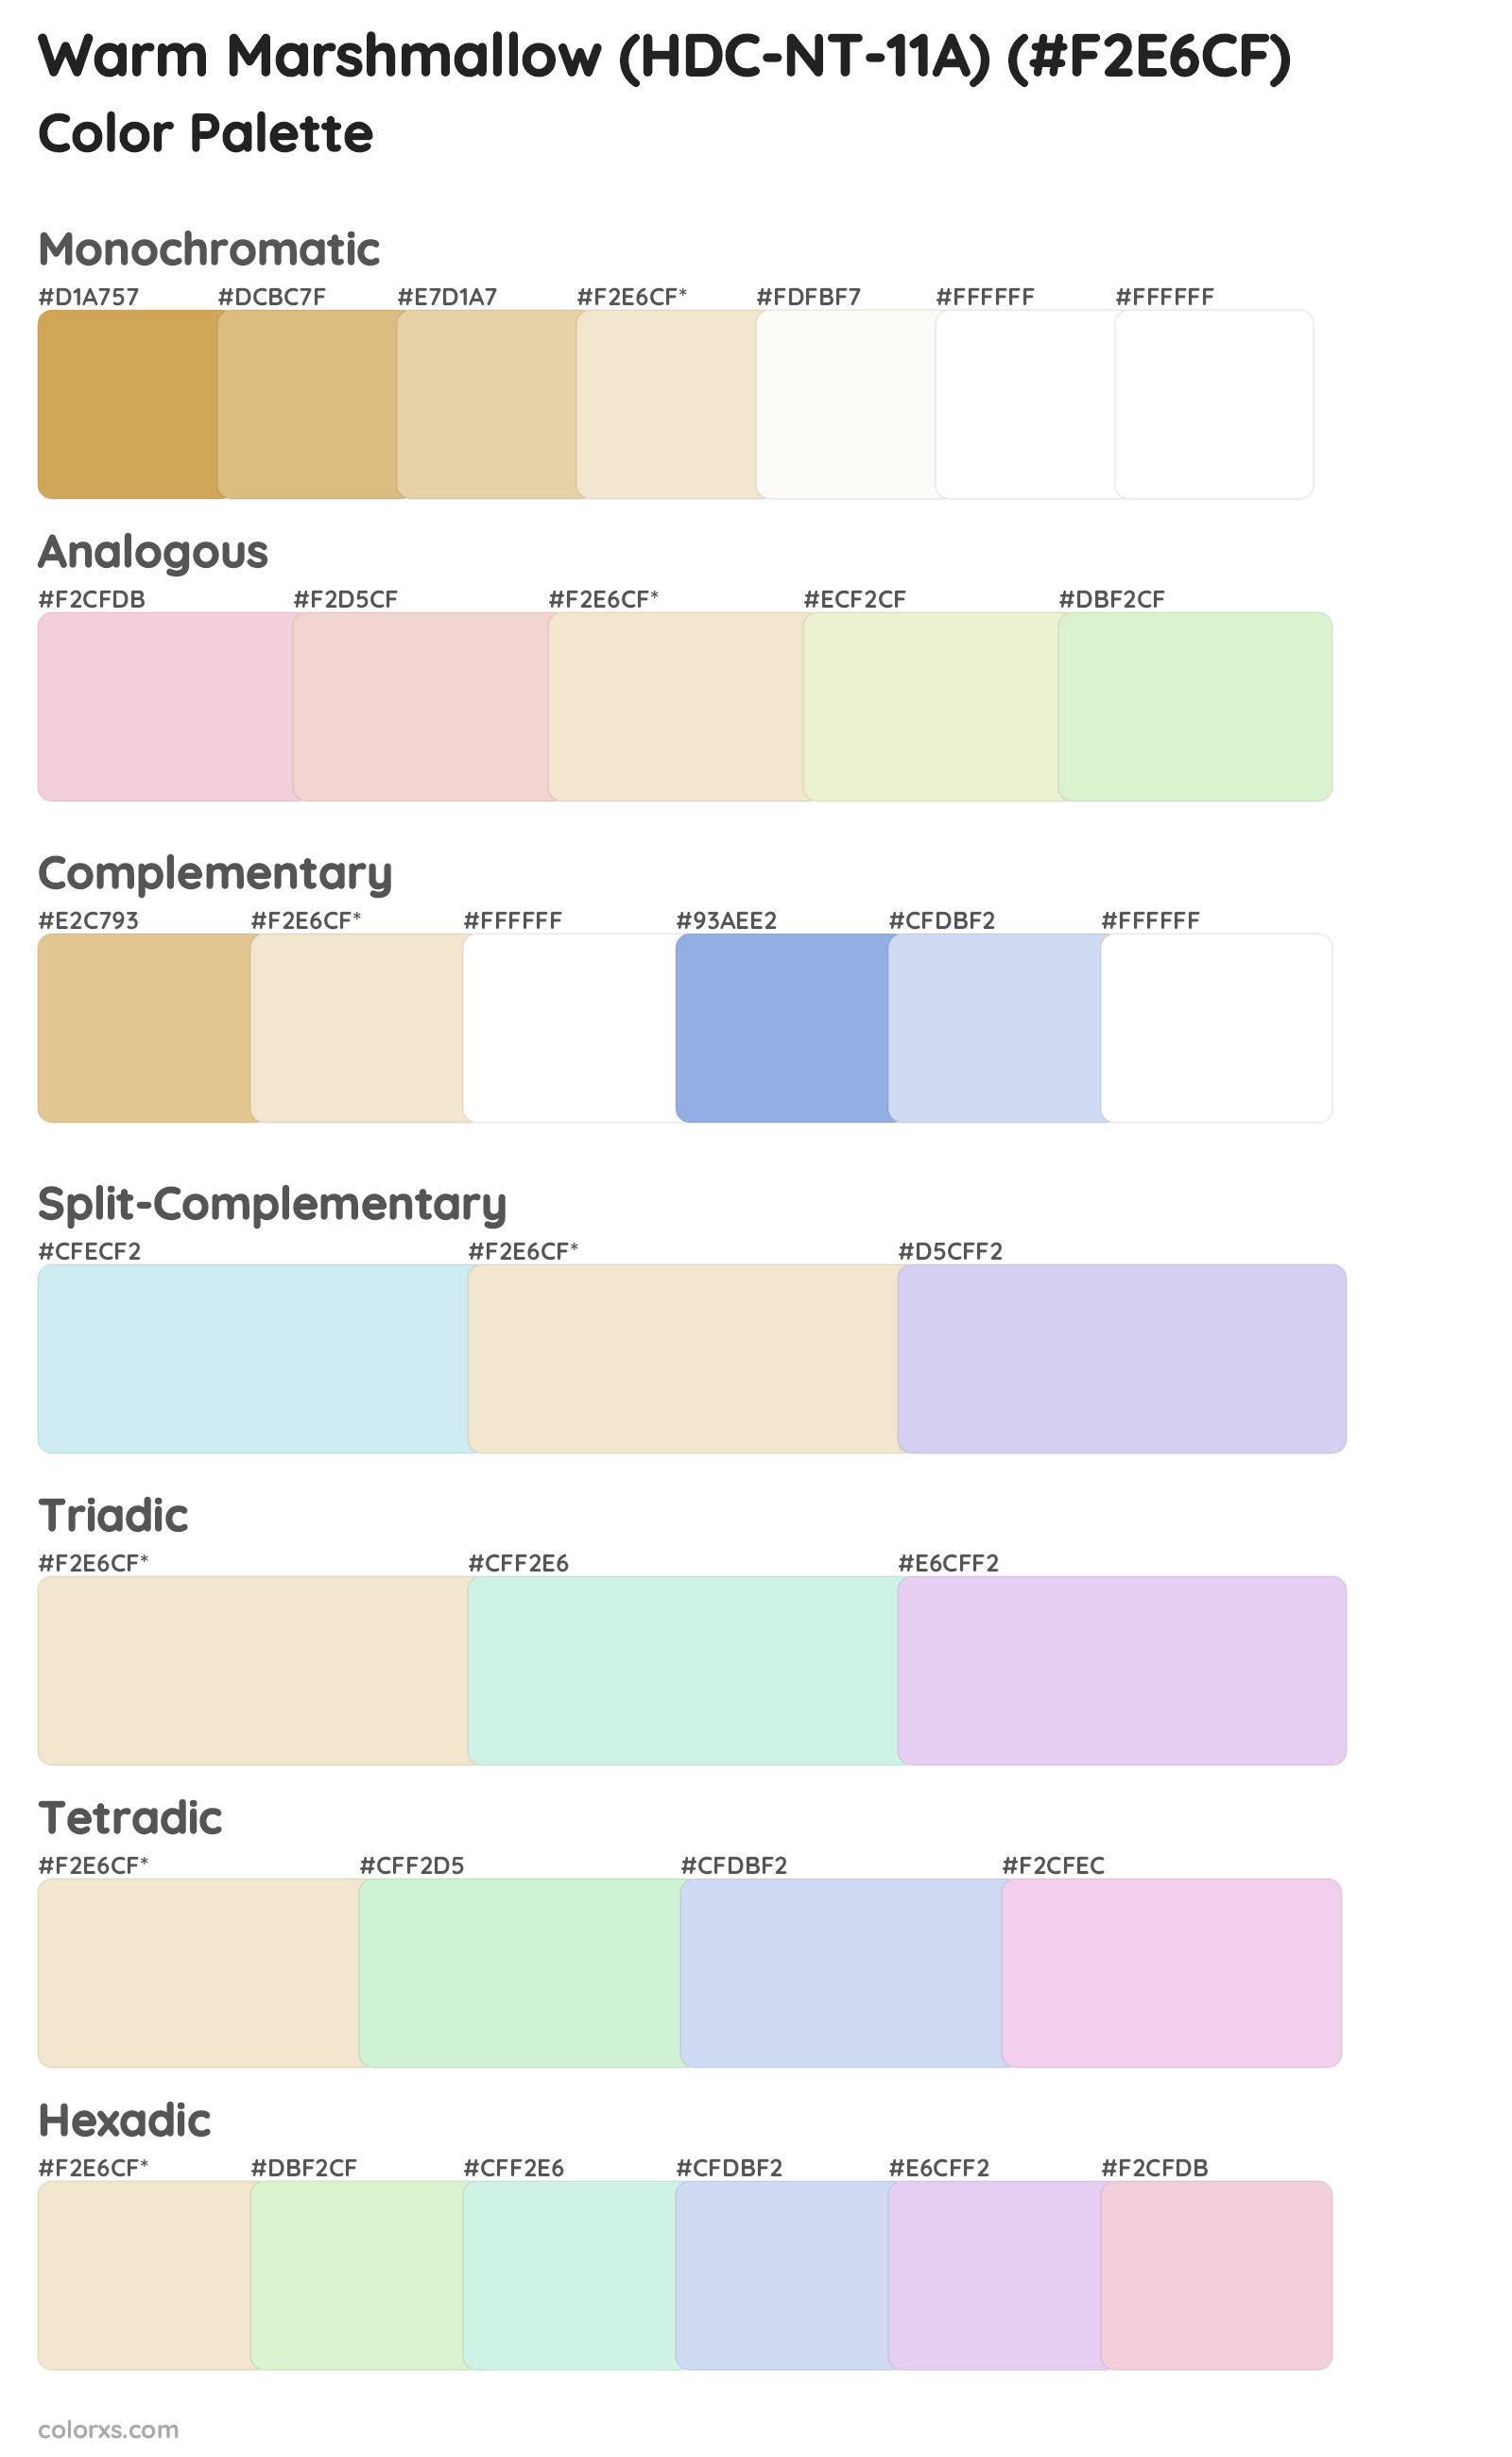 Warm Marshmallow (HDC-NT-11A) Color Scheme Palettes